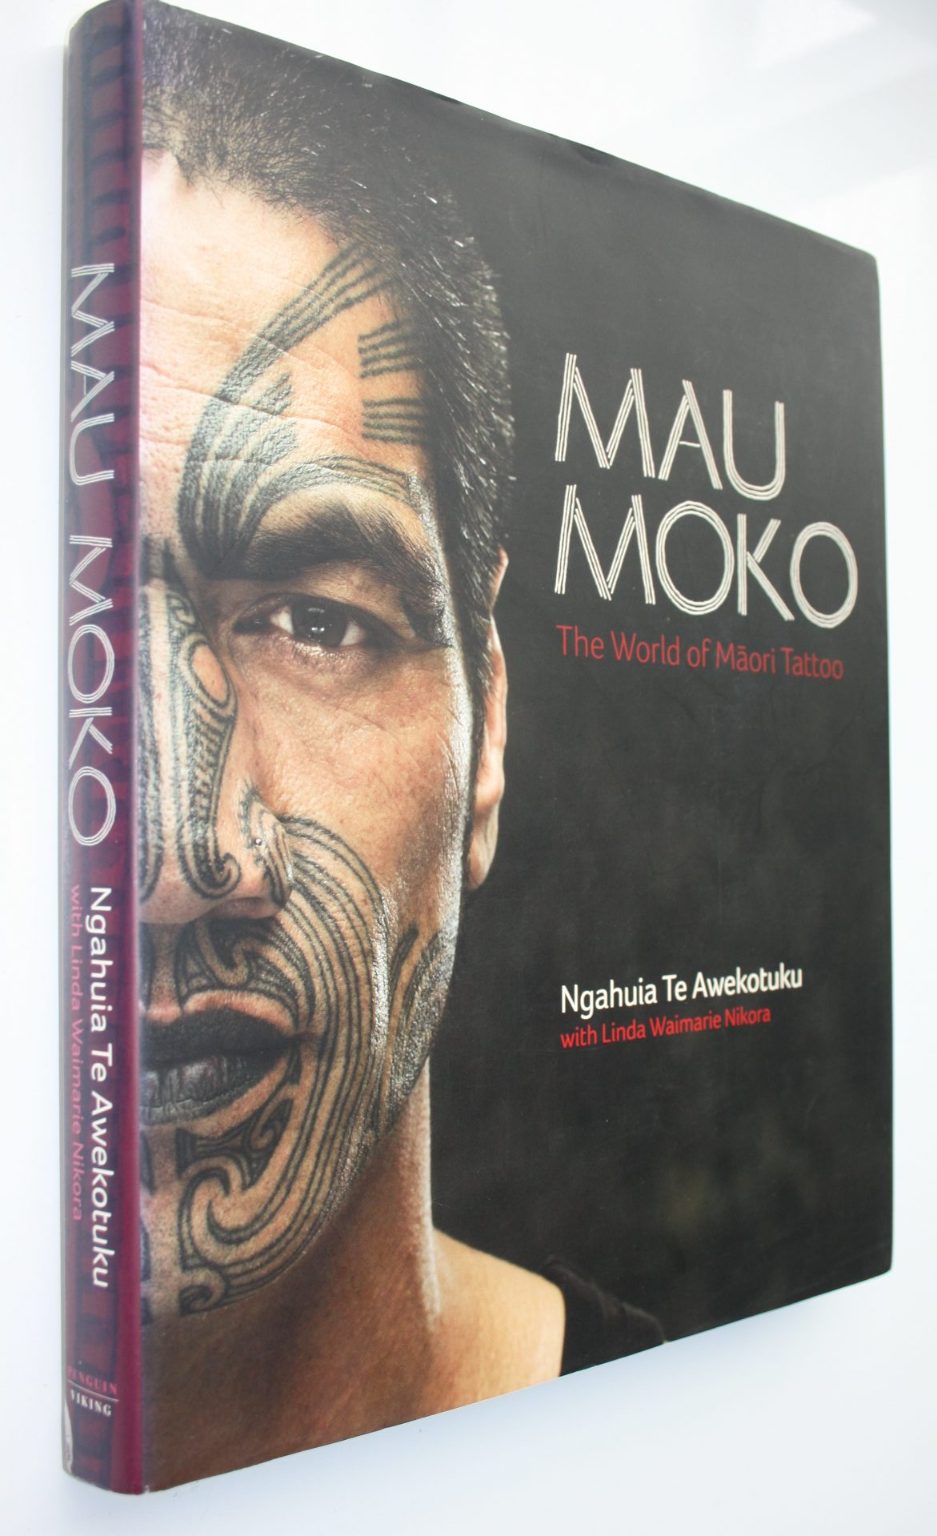 Mau Moko The World of Maori Tattoo By Ngahuia Te Awekotuku.